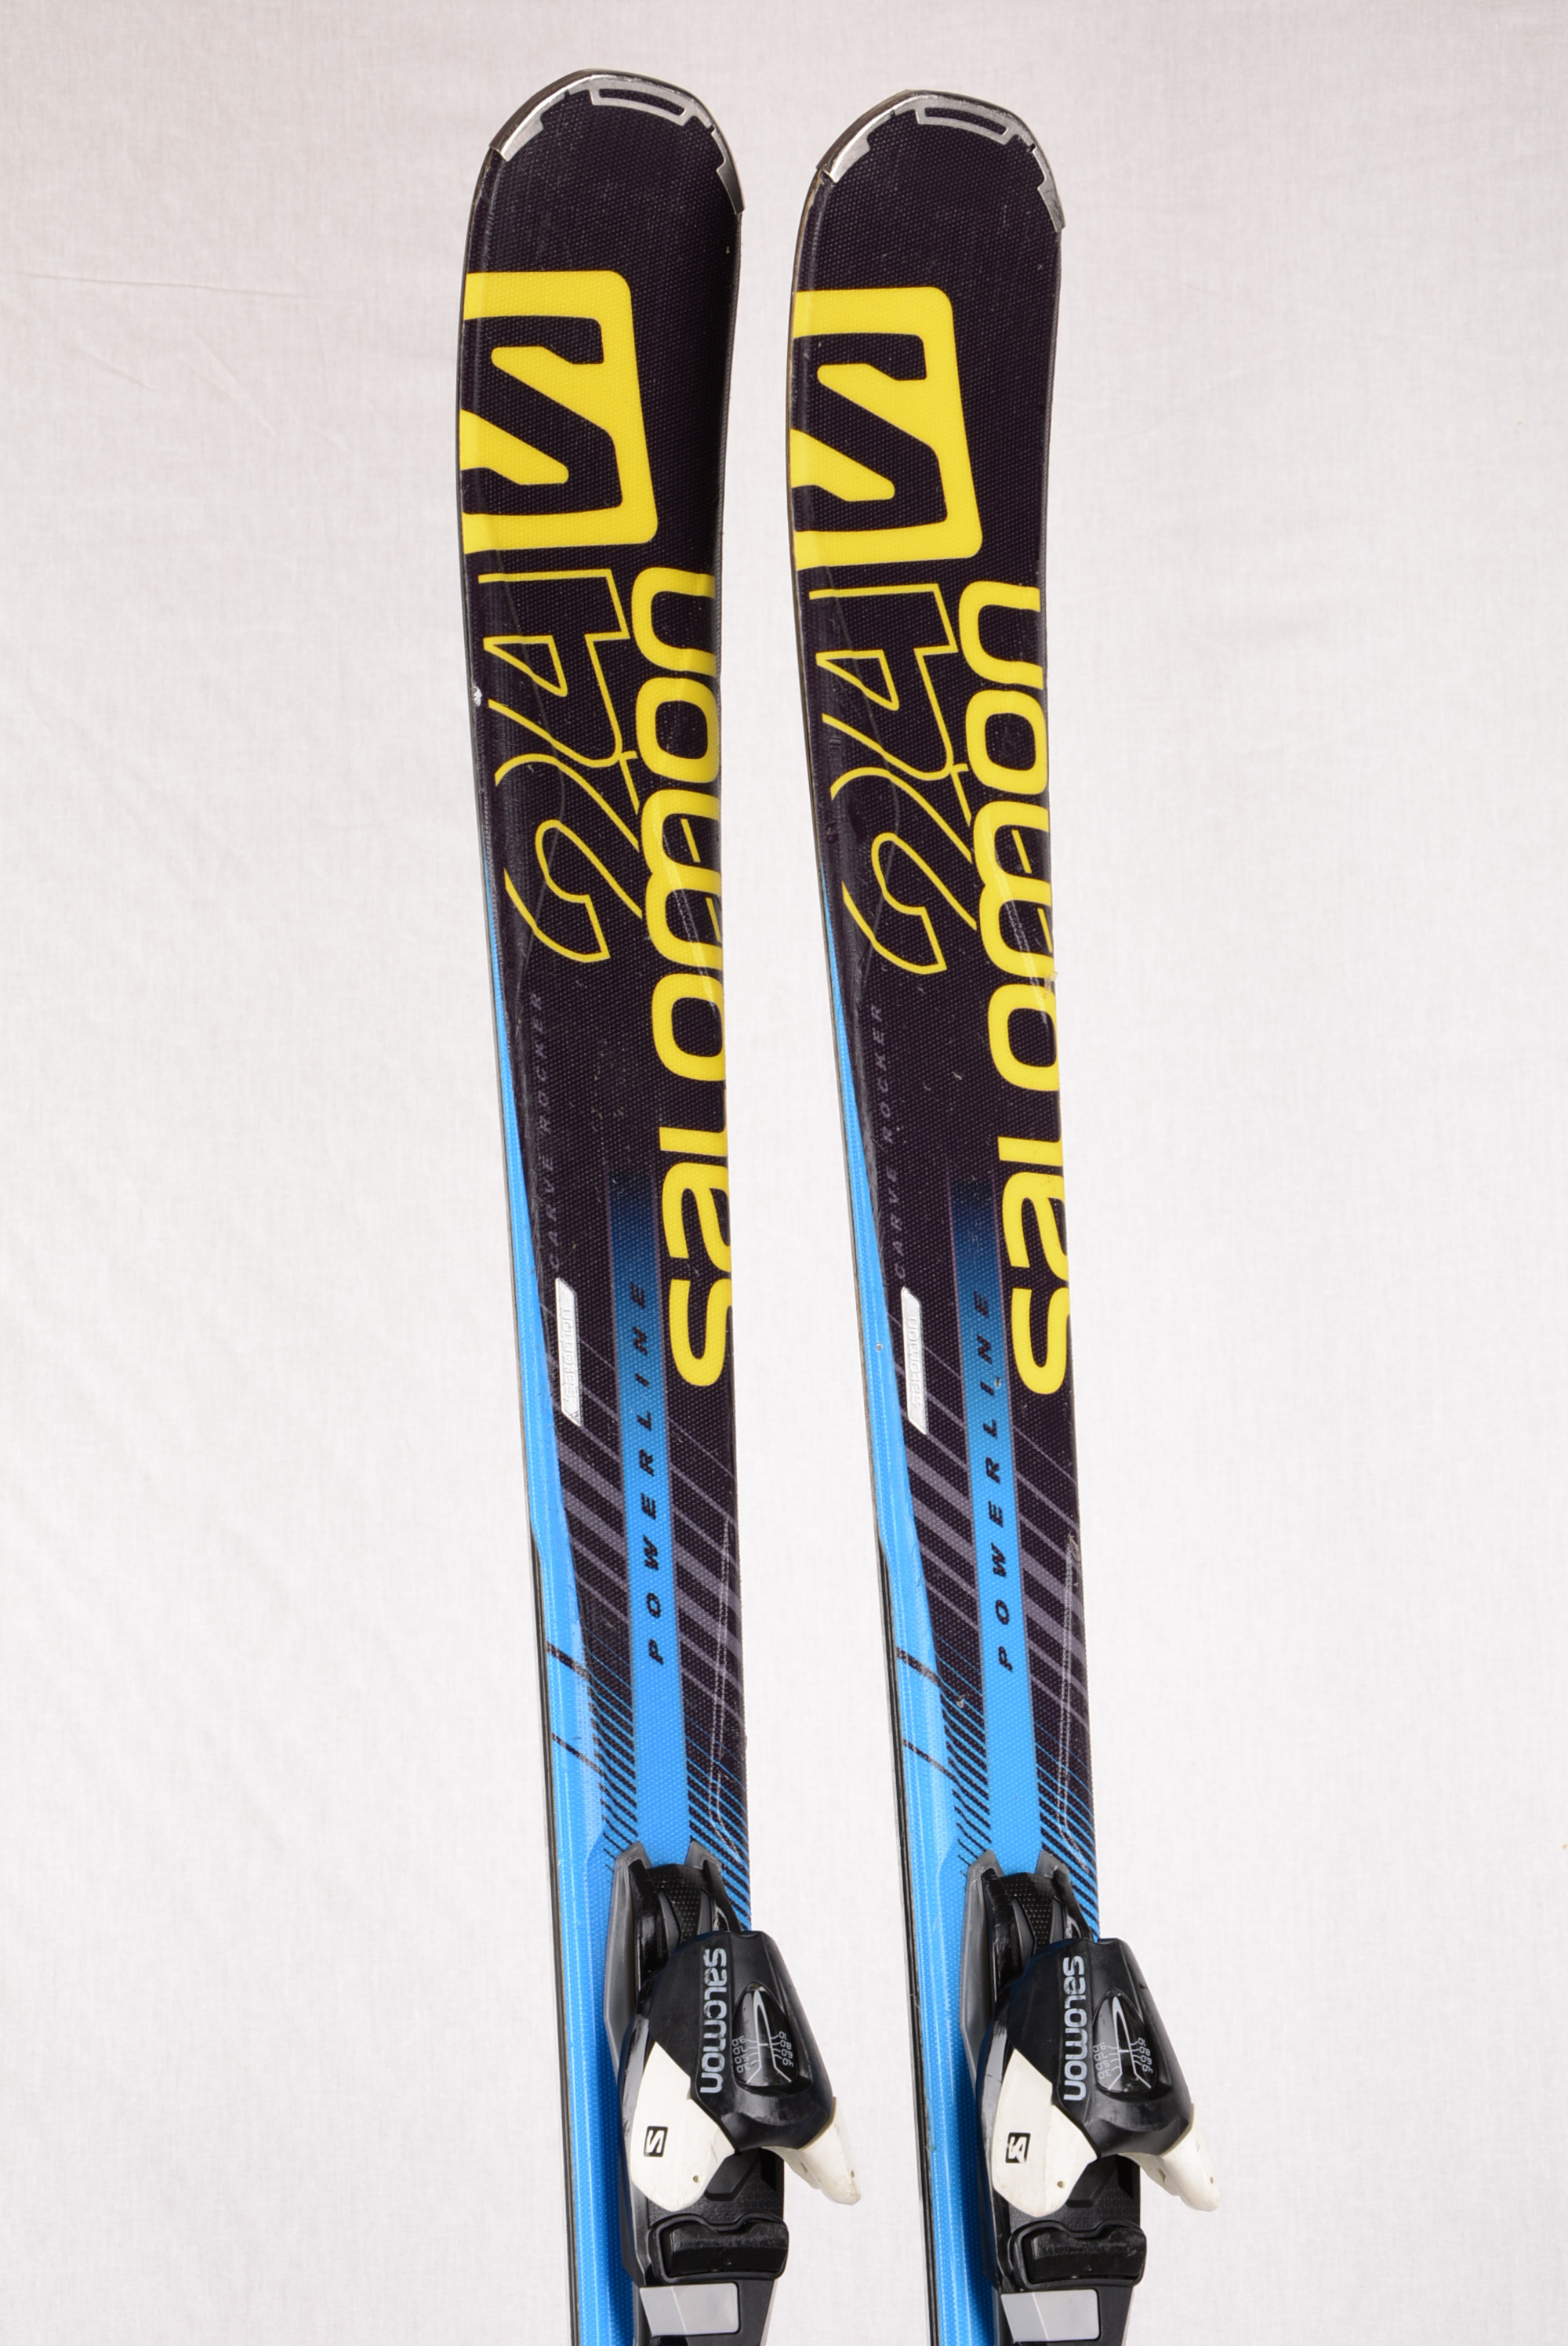 lager veer deze skis SALOMON 24hrs PWR blue, WOODCORE, TITANIUM, POWERLINE + Salomon L10 -  Mardosport.com